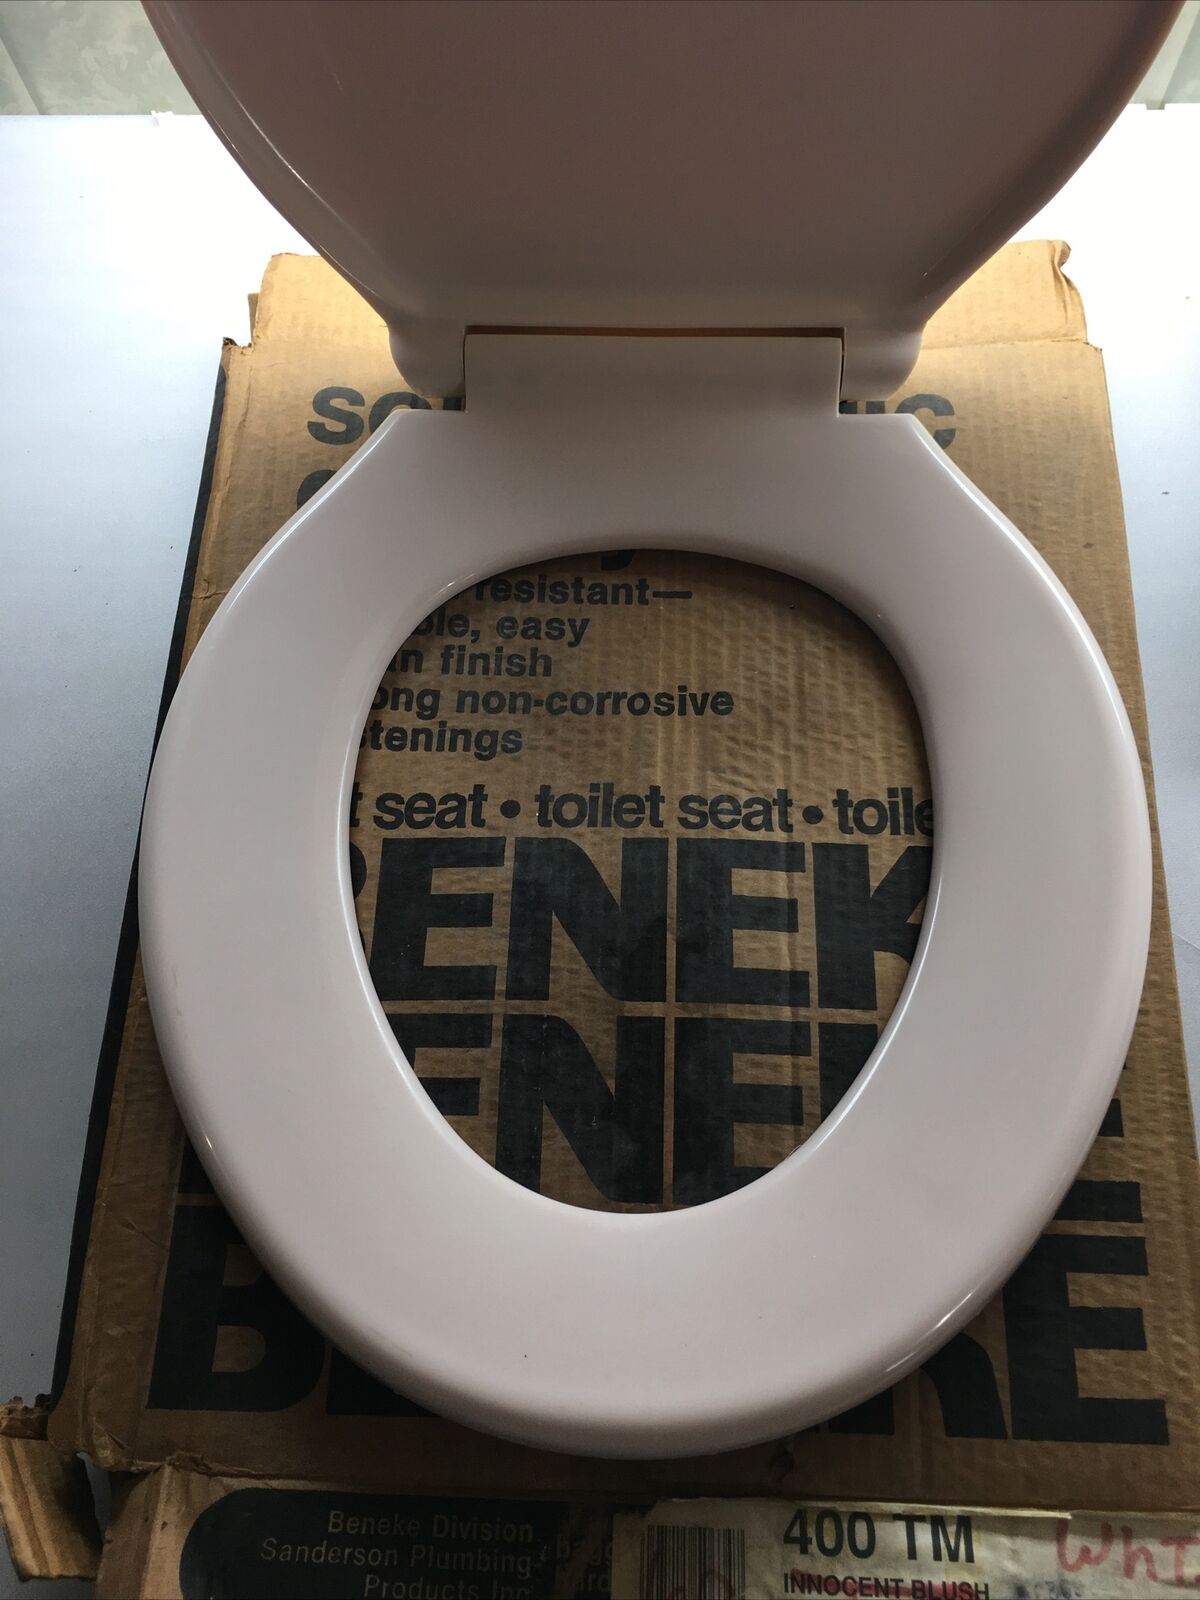 Beneke 400 TM Innocent Blush Toilet Seat